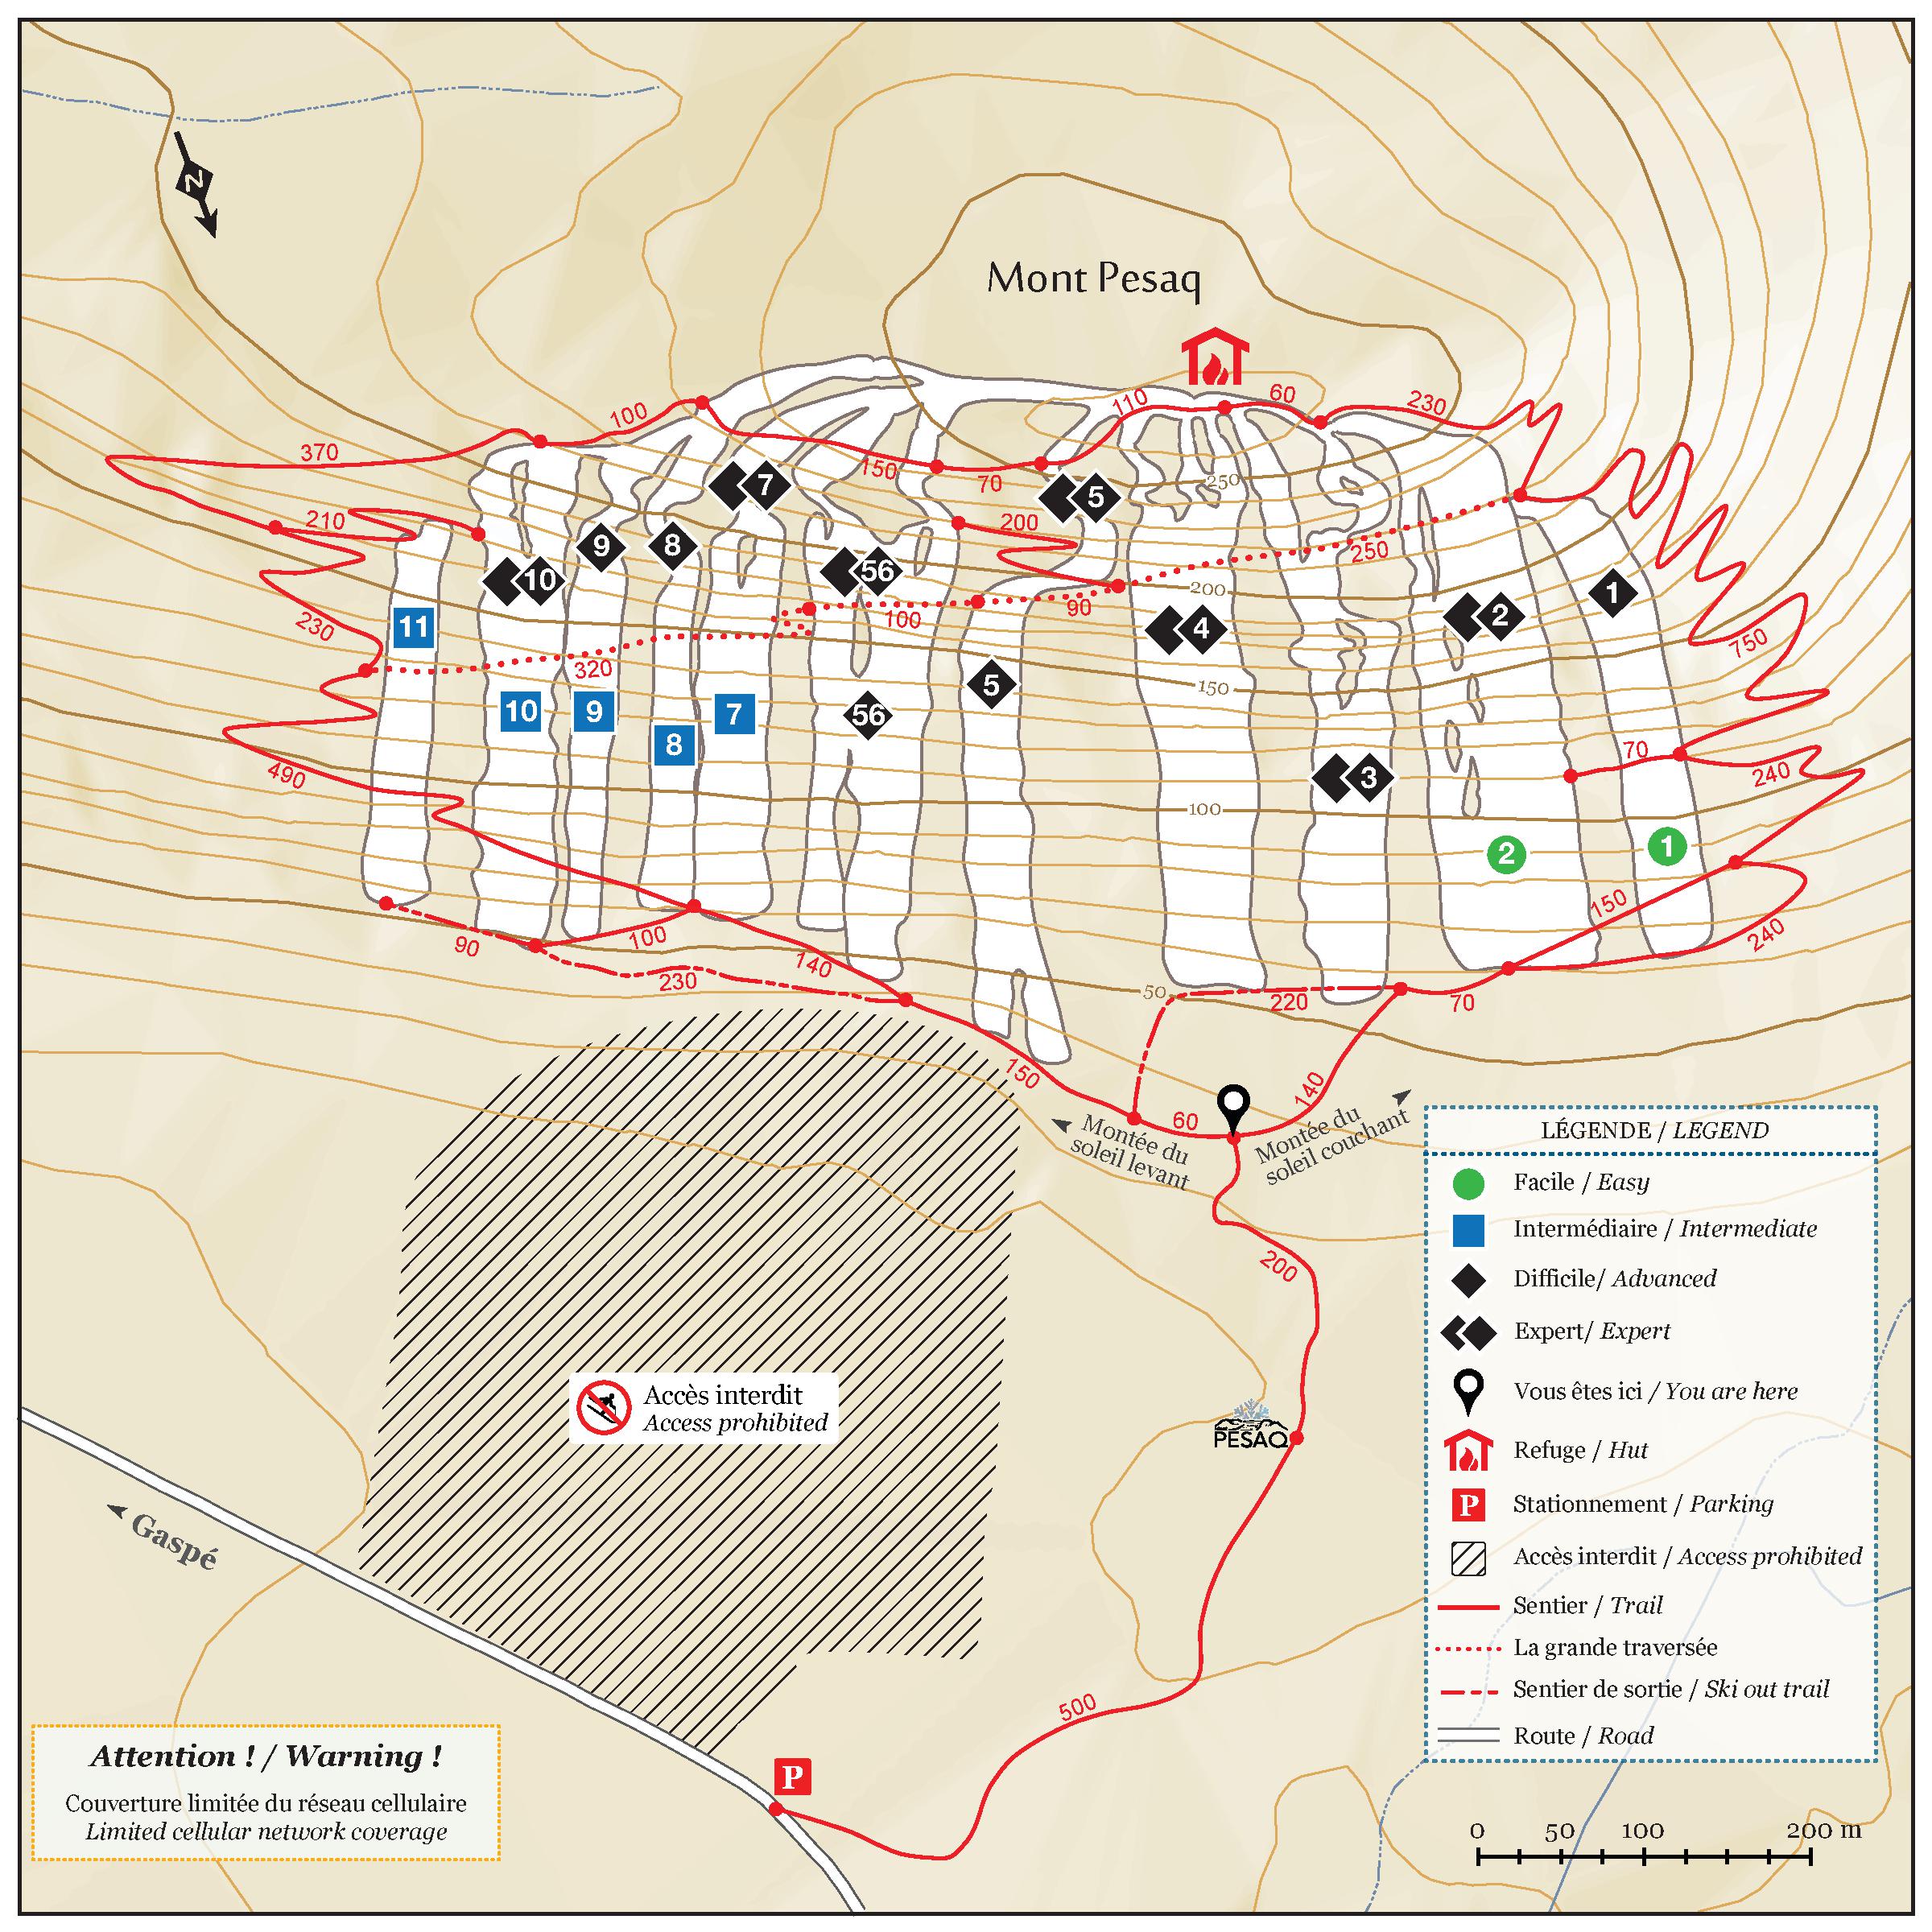 Mount Pesaq cartography